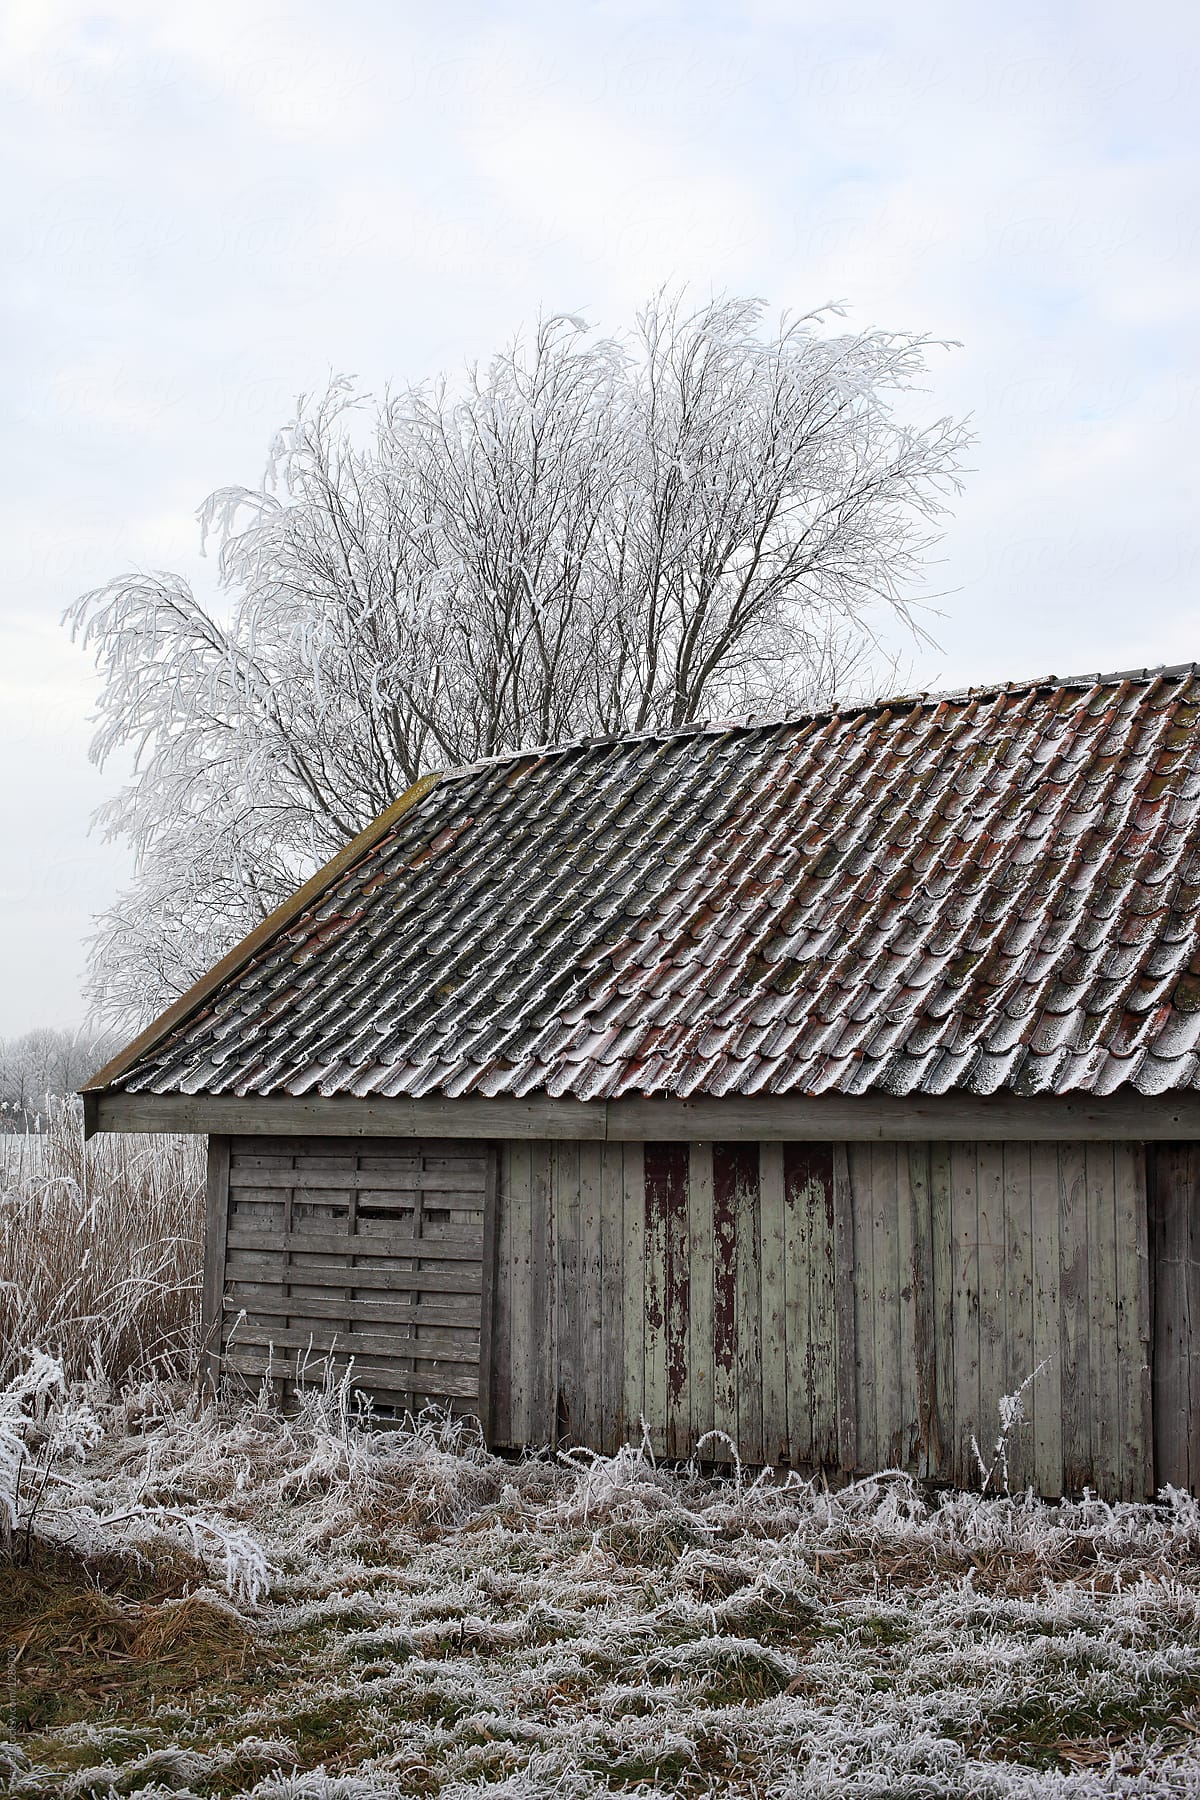 Rustic old barn in frozen field in winter